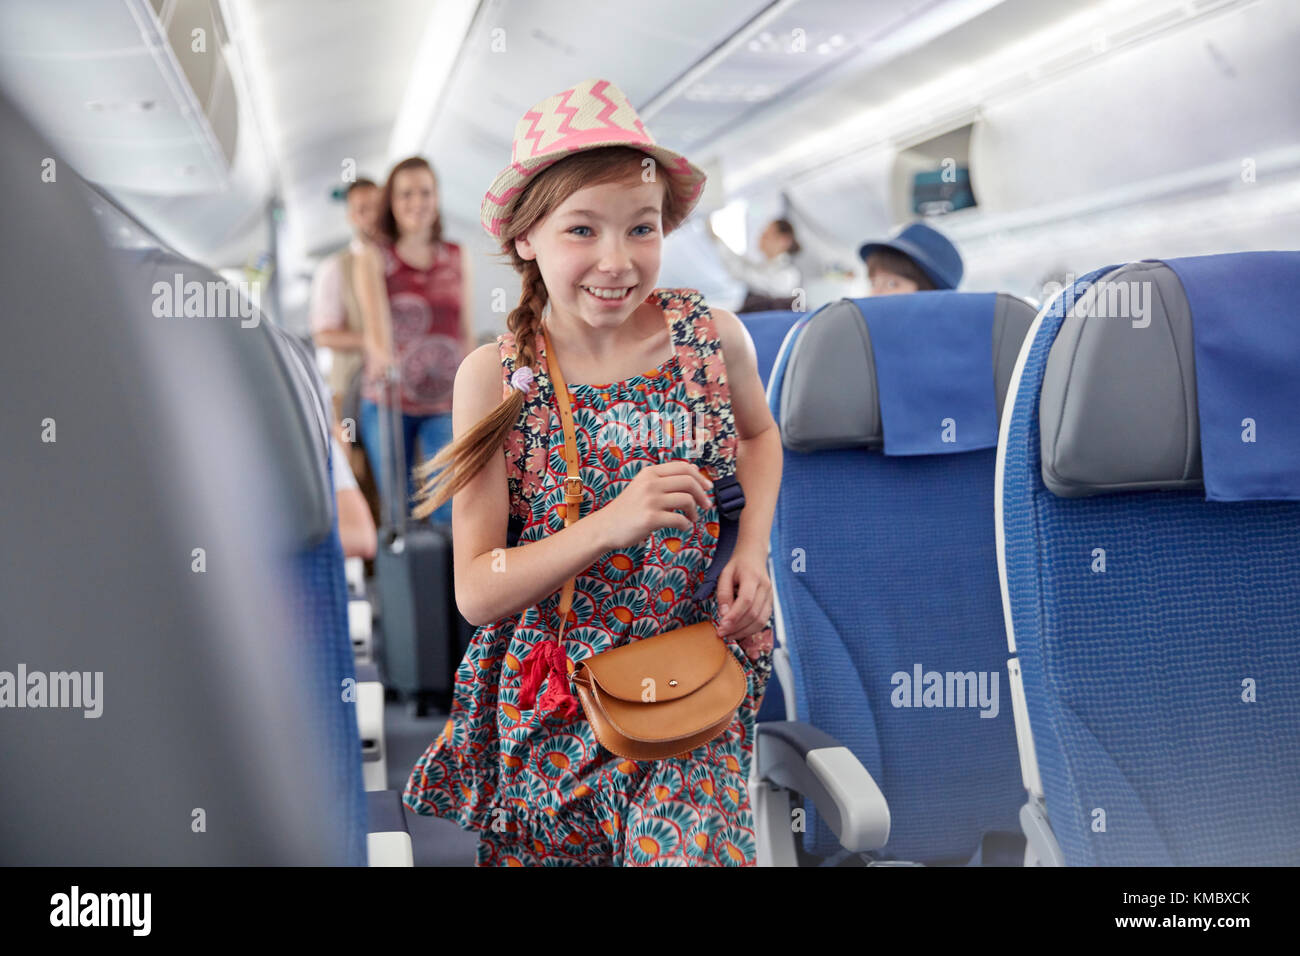 Lächelnd, begieriges Mädchen, das mit dem Flugzeug steigt Stockfoto